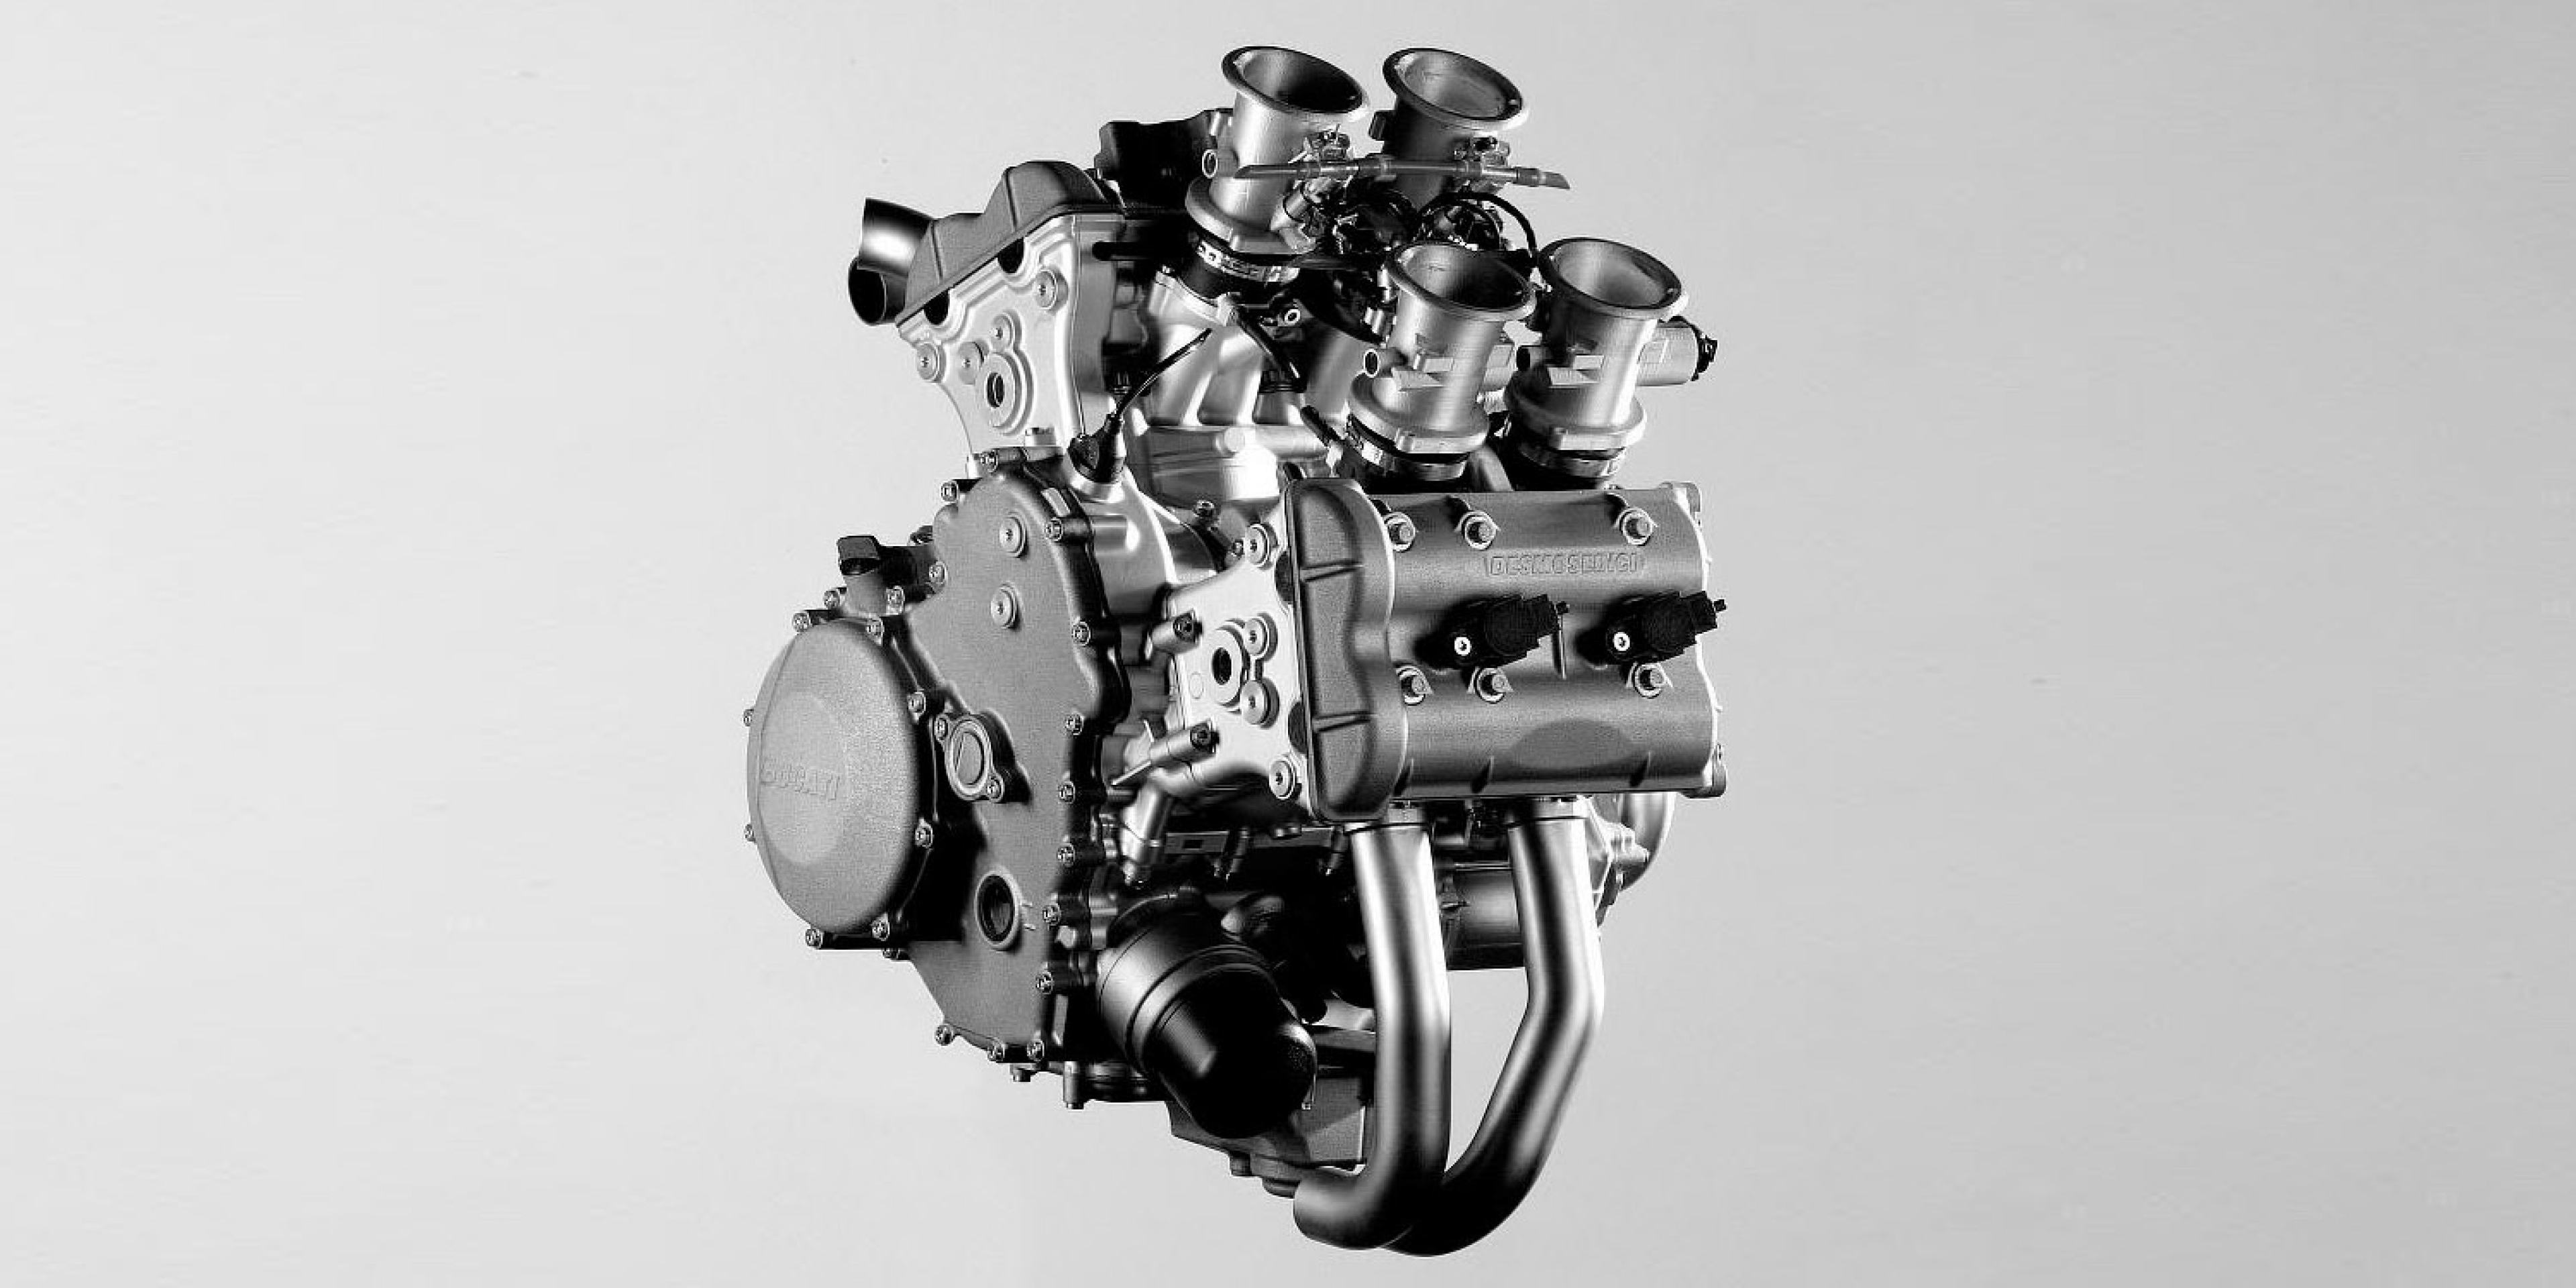 最近市场上还有一个传闻,说ducati 的四缸引擎会有两种排气量,不过